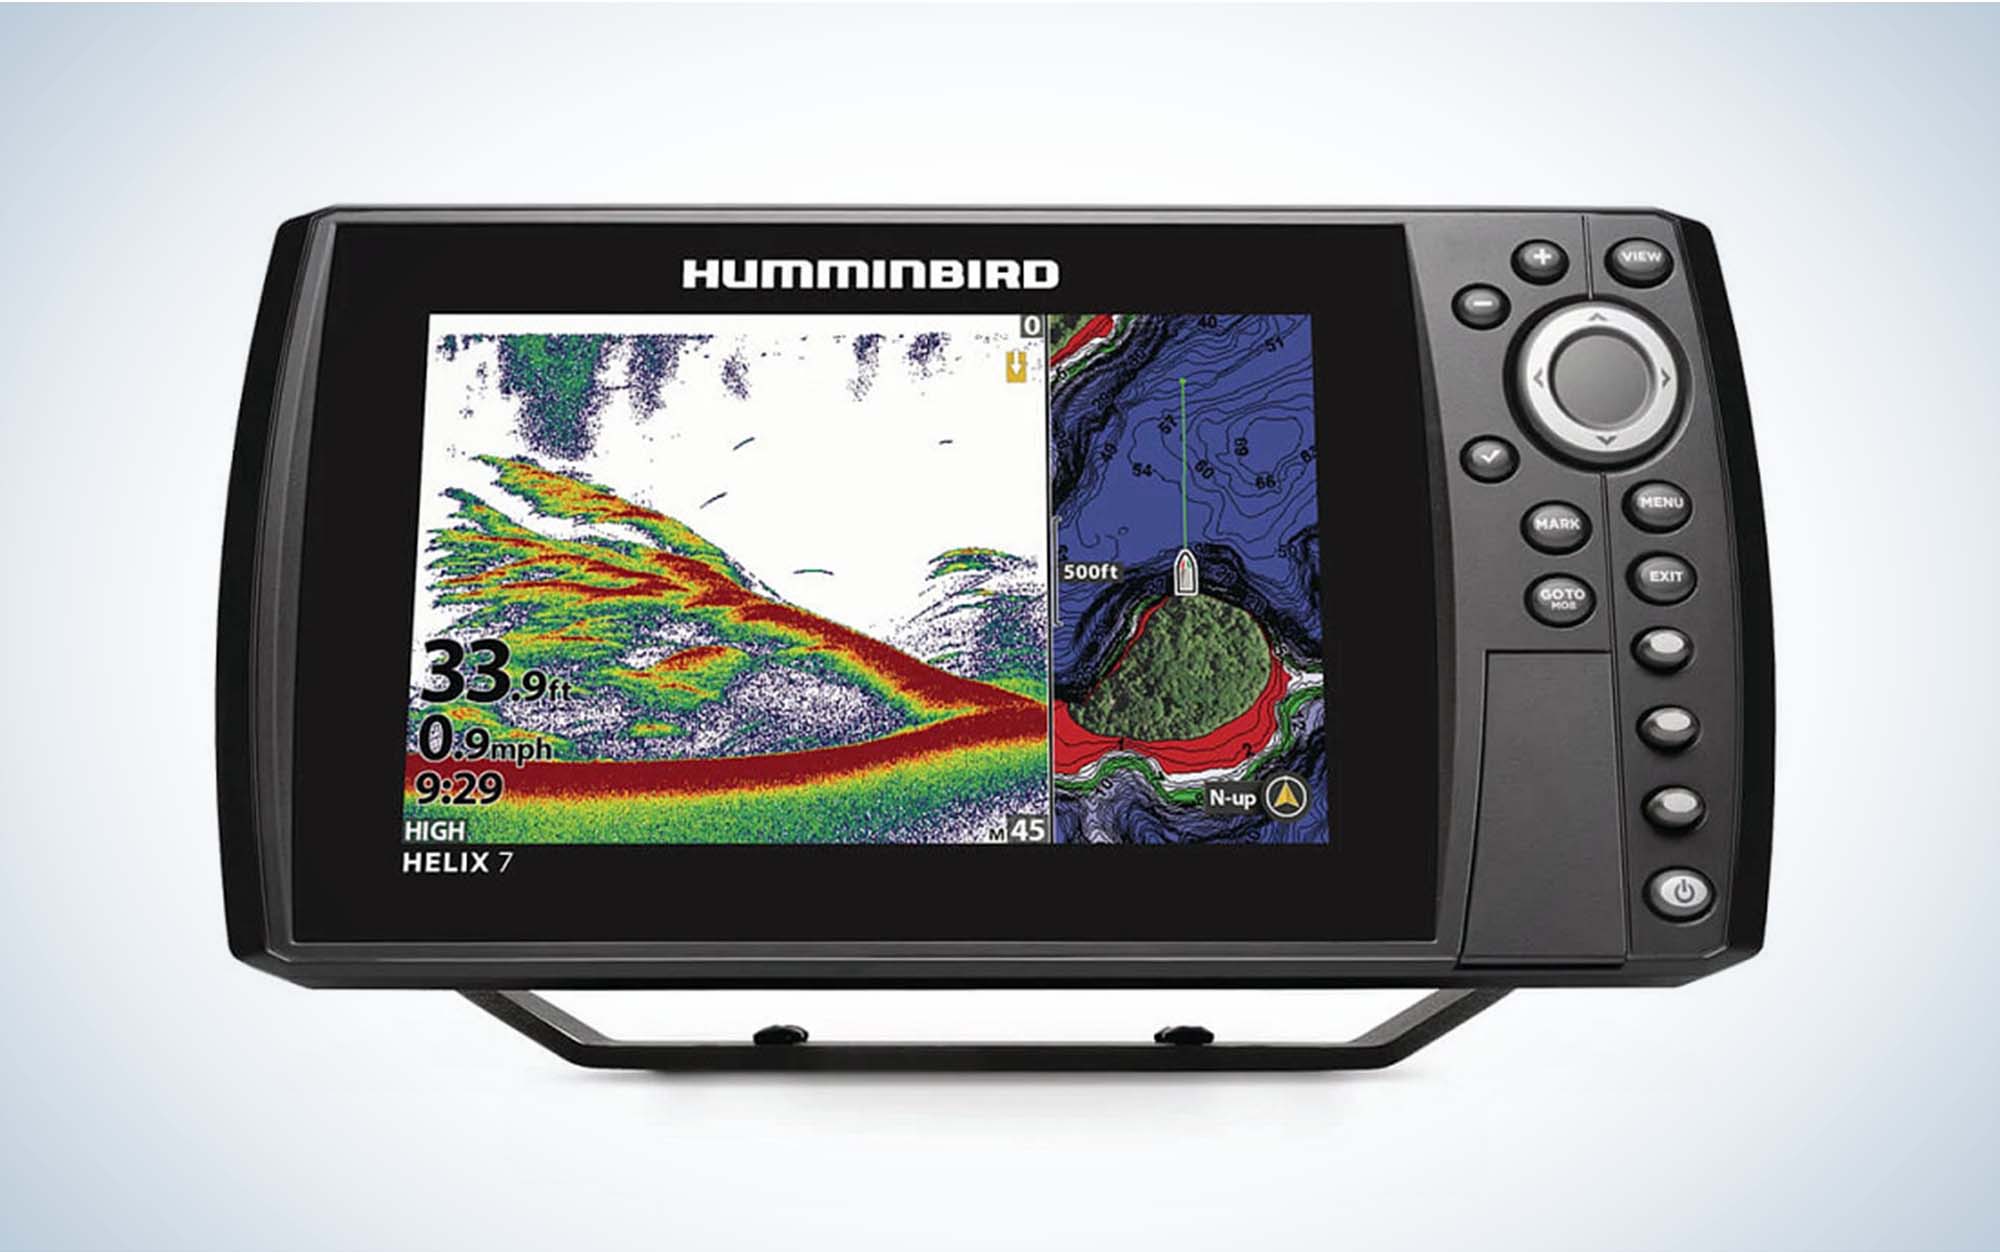 About Humminbird Fishing Electronics - Humminbird